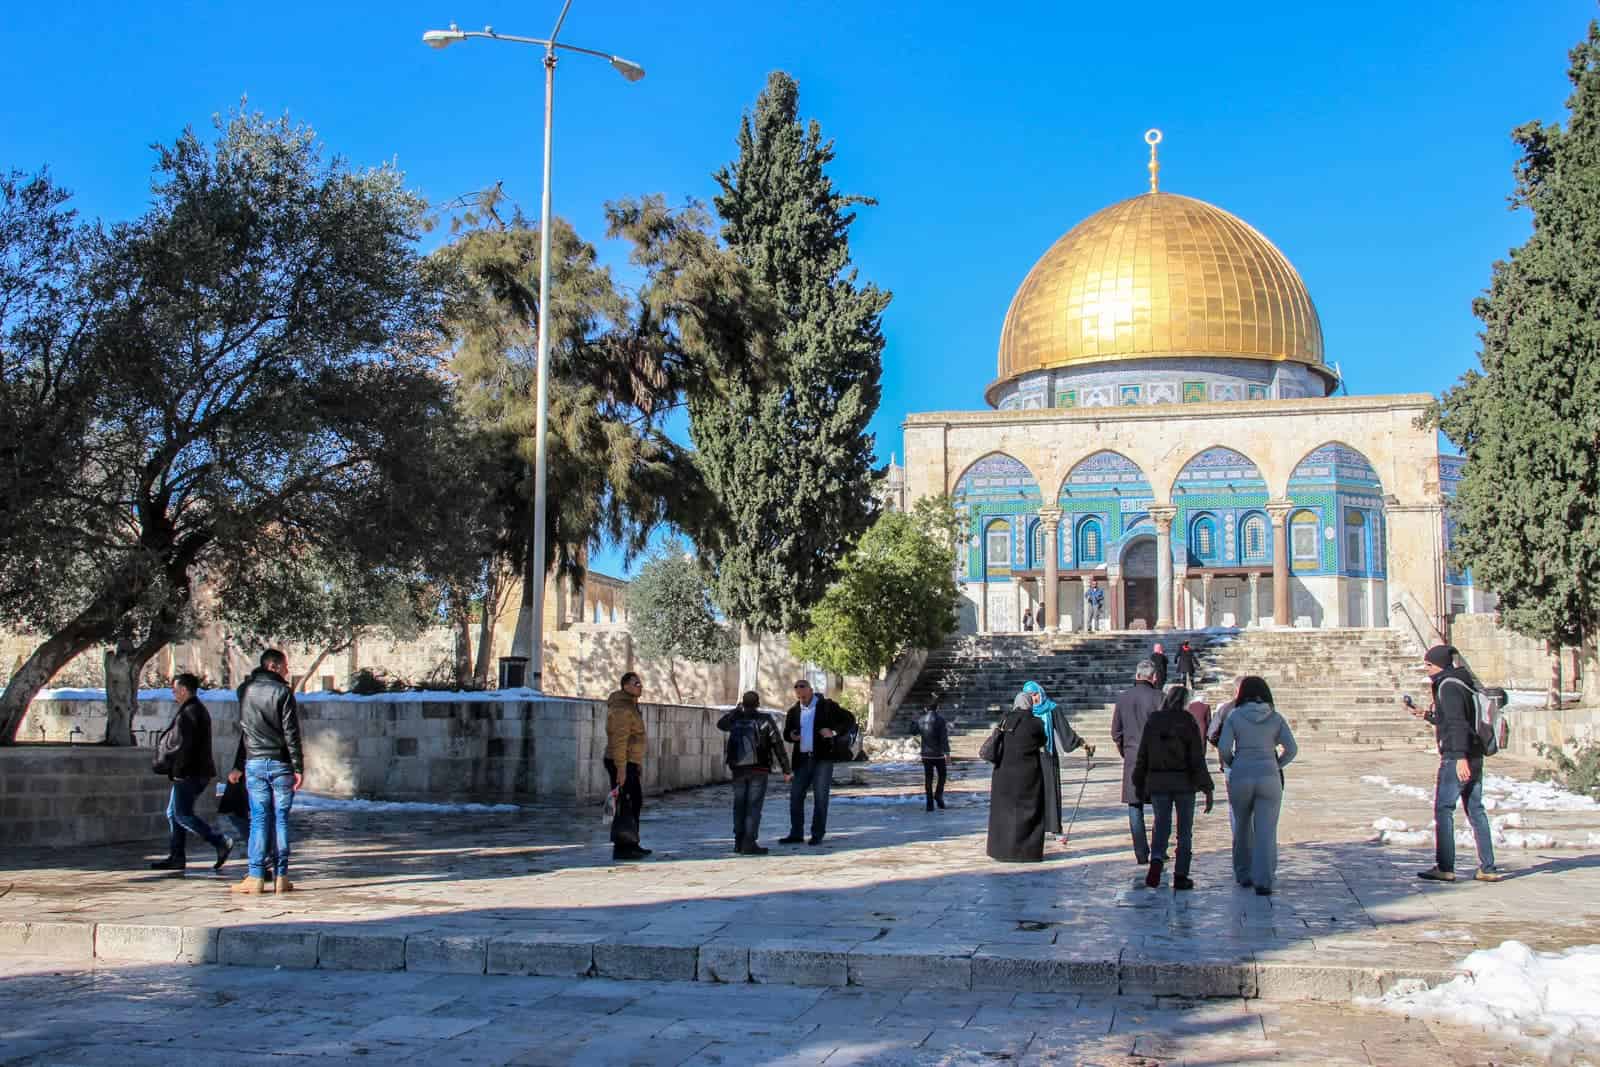 Visiting Temple Mount in Jerusalem